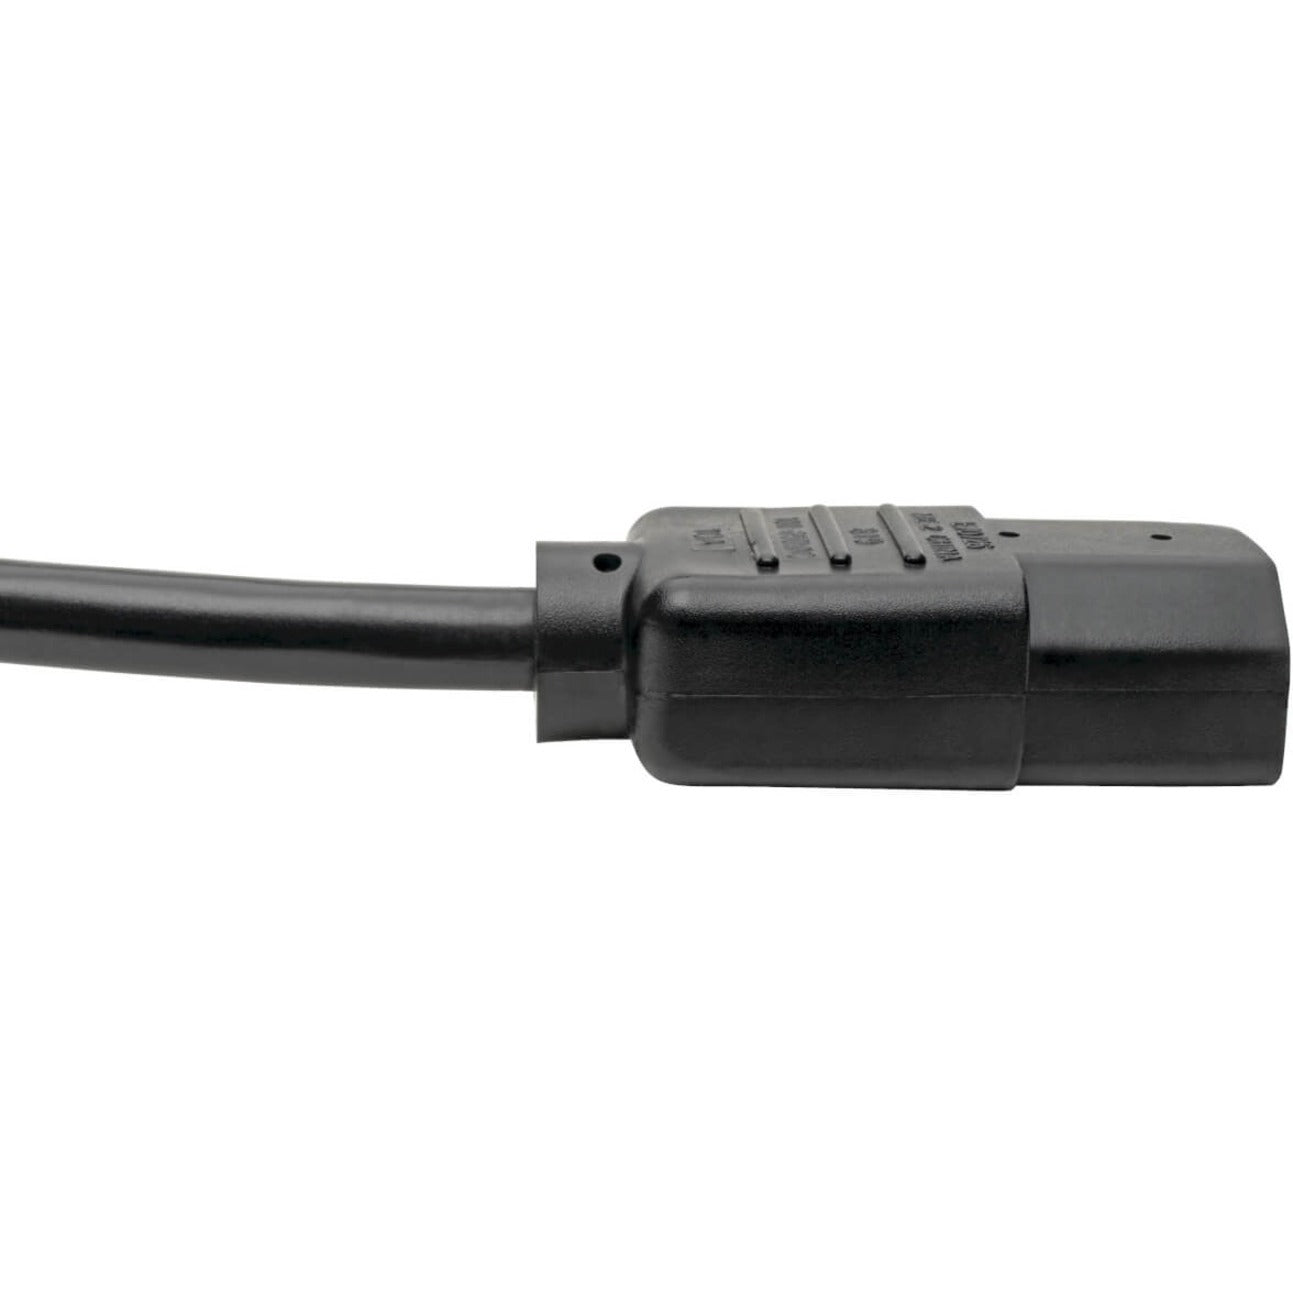 Tripp Lite P004-010 Power Cord, 10-ft. 18AWG IEC-320-C14 to IEC-320-C13, Lifetime Warranty